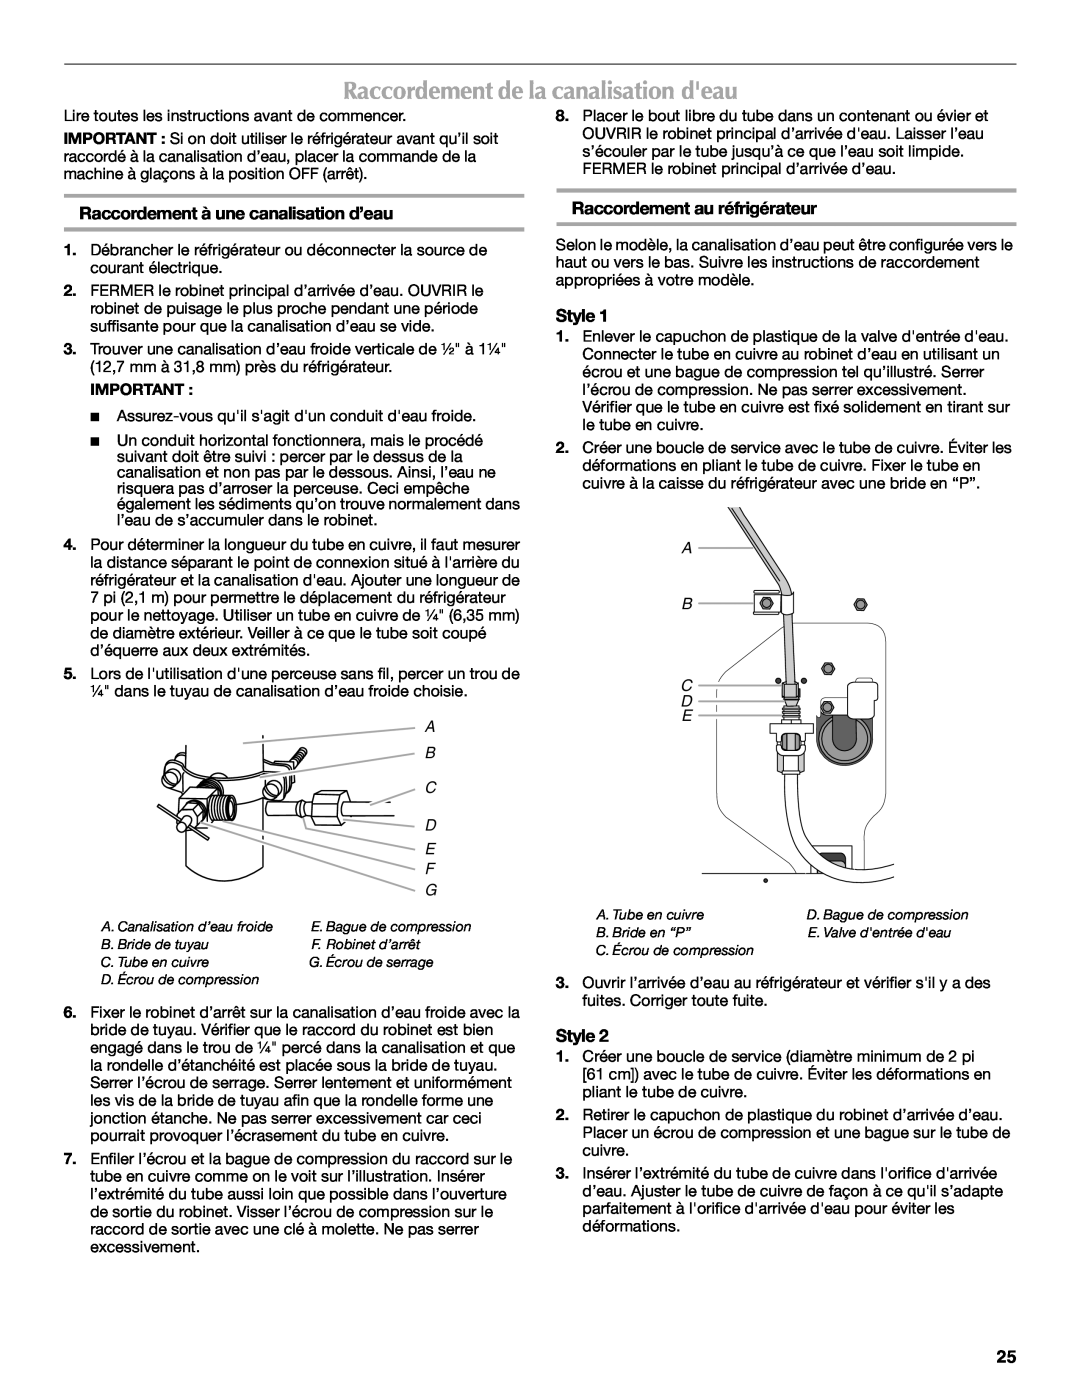 Maytag W10175446B manual Raccordement de la canalisation deau, Raccordement à une canalisation d’eau, Style, A B C D E 